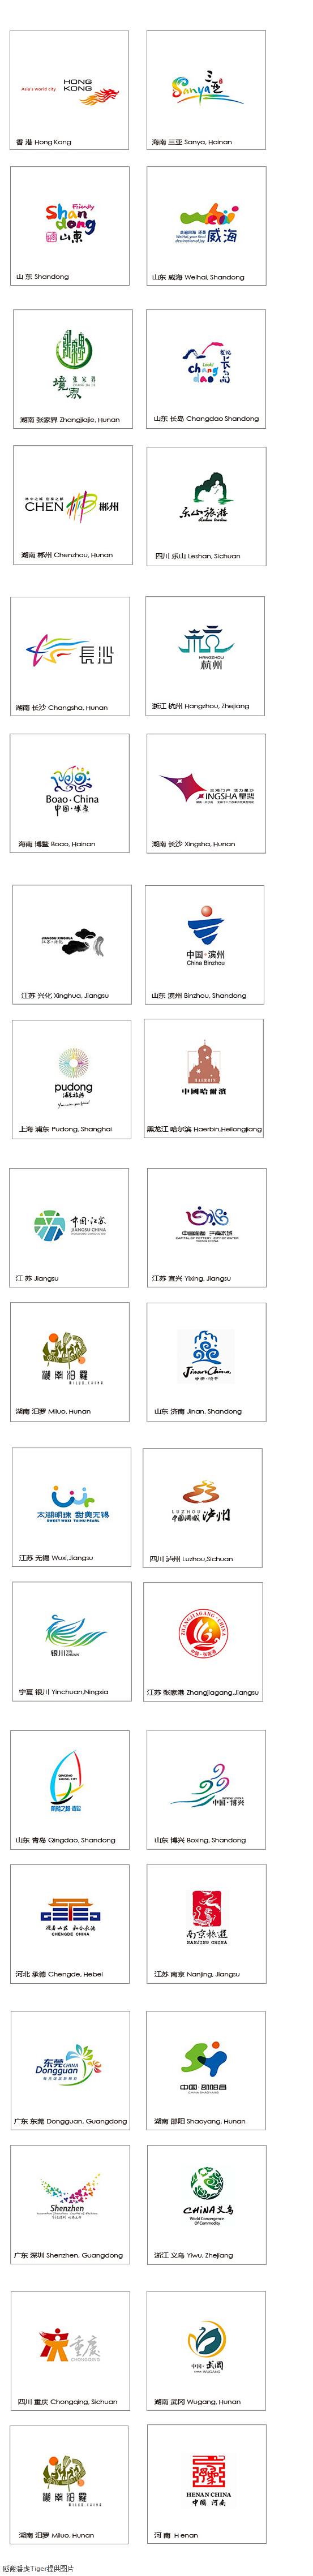 中国36个城市形象logo大集合 - 标...